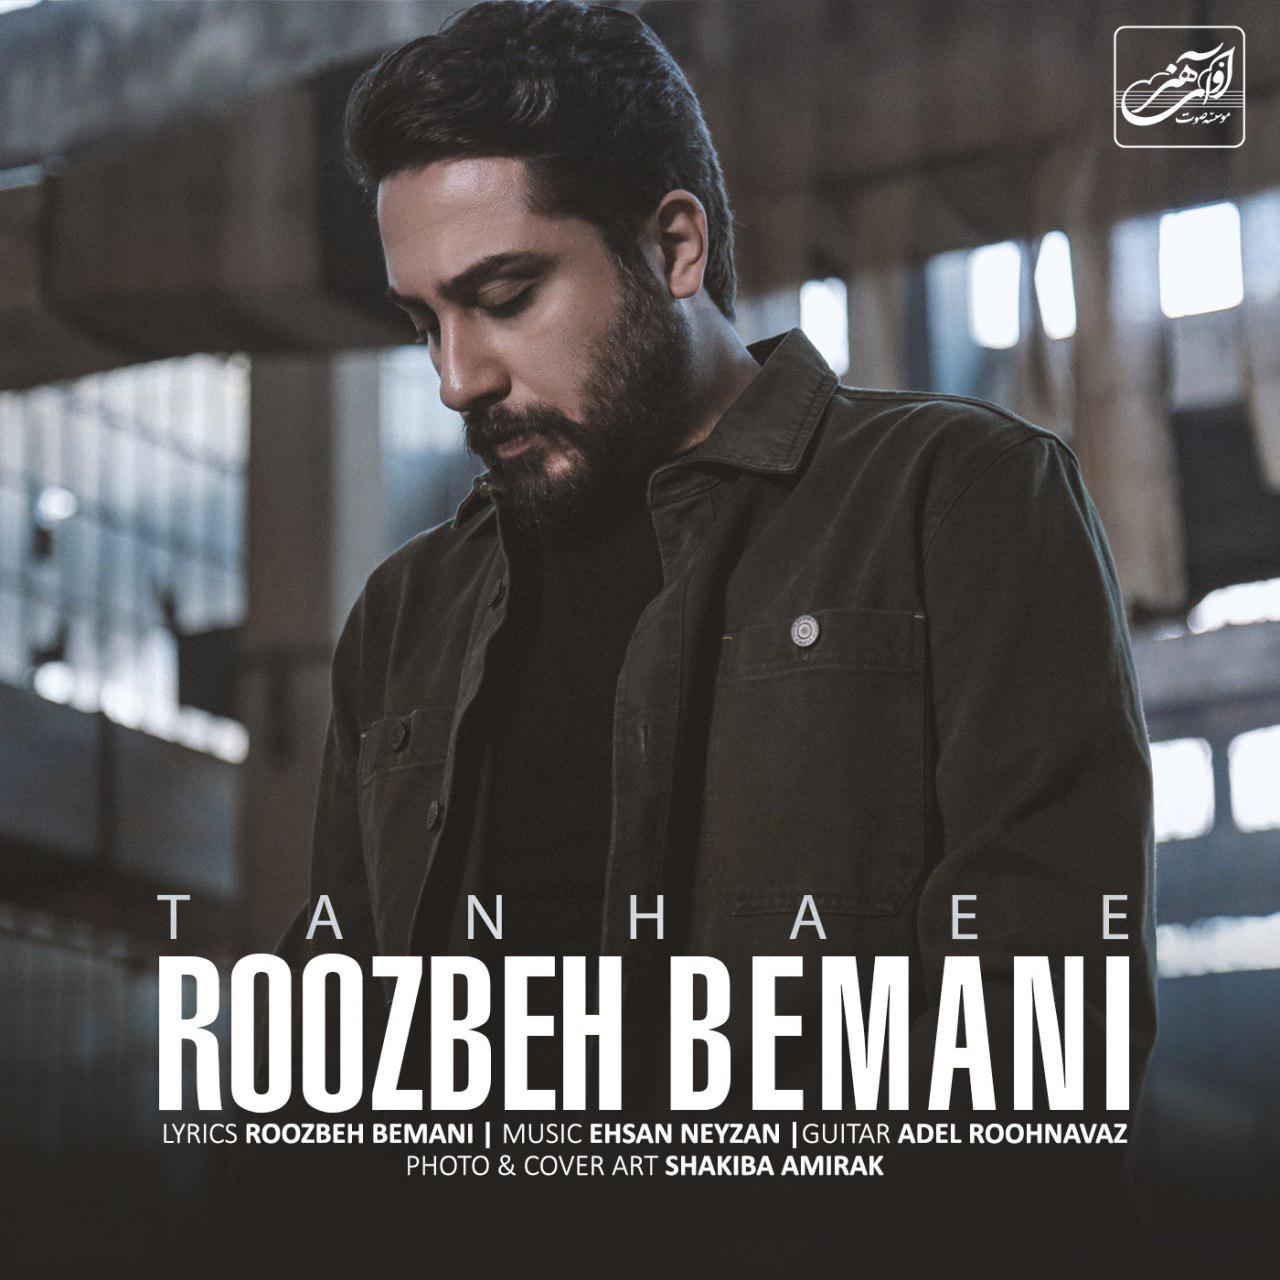  دانلود آهنگ جدید روزبه بمانی - تنهایی | Download New Music By Roozbeh Bemani - Tanhaee